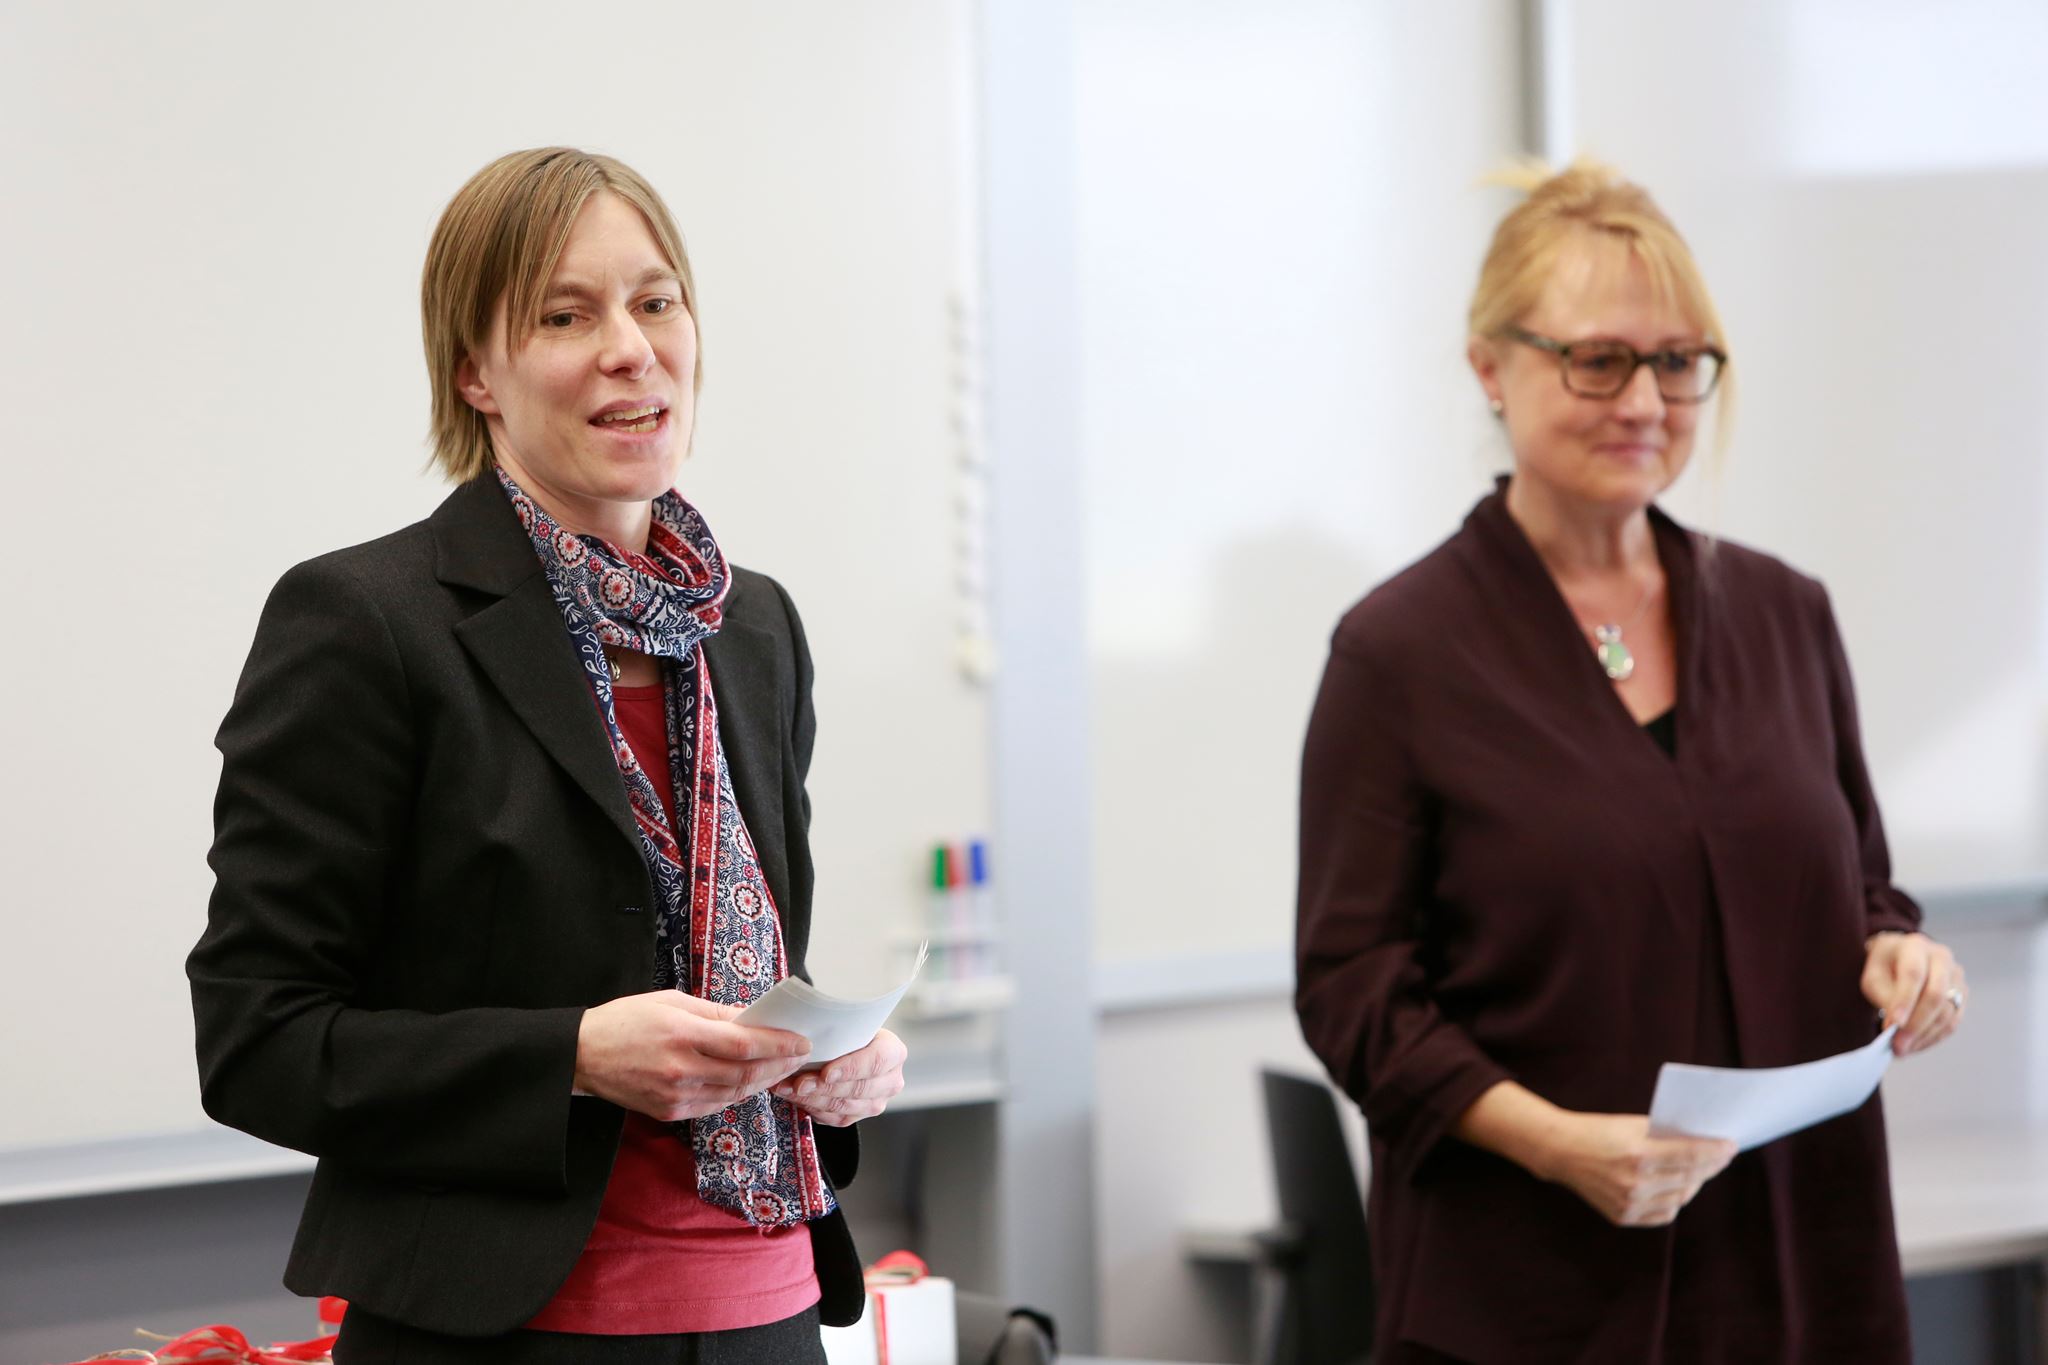 Franziska Zellweger vom Zentrum für Hochschulentwicklung der PHZH (links) und Claudia Ulbrich Mitglied der Lehrpreisjury